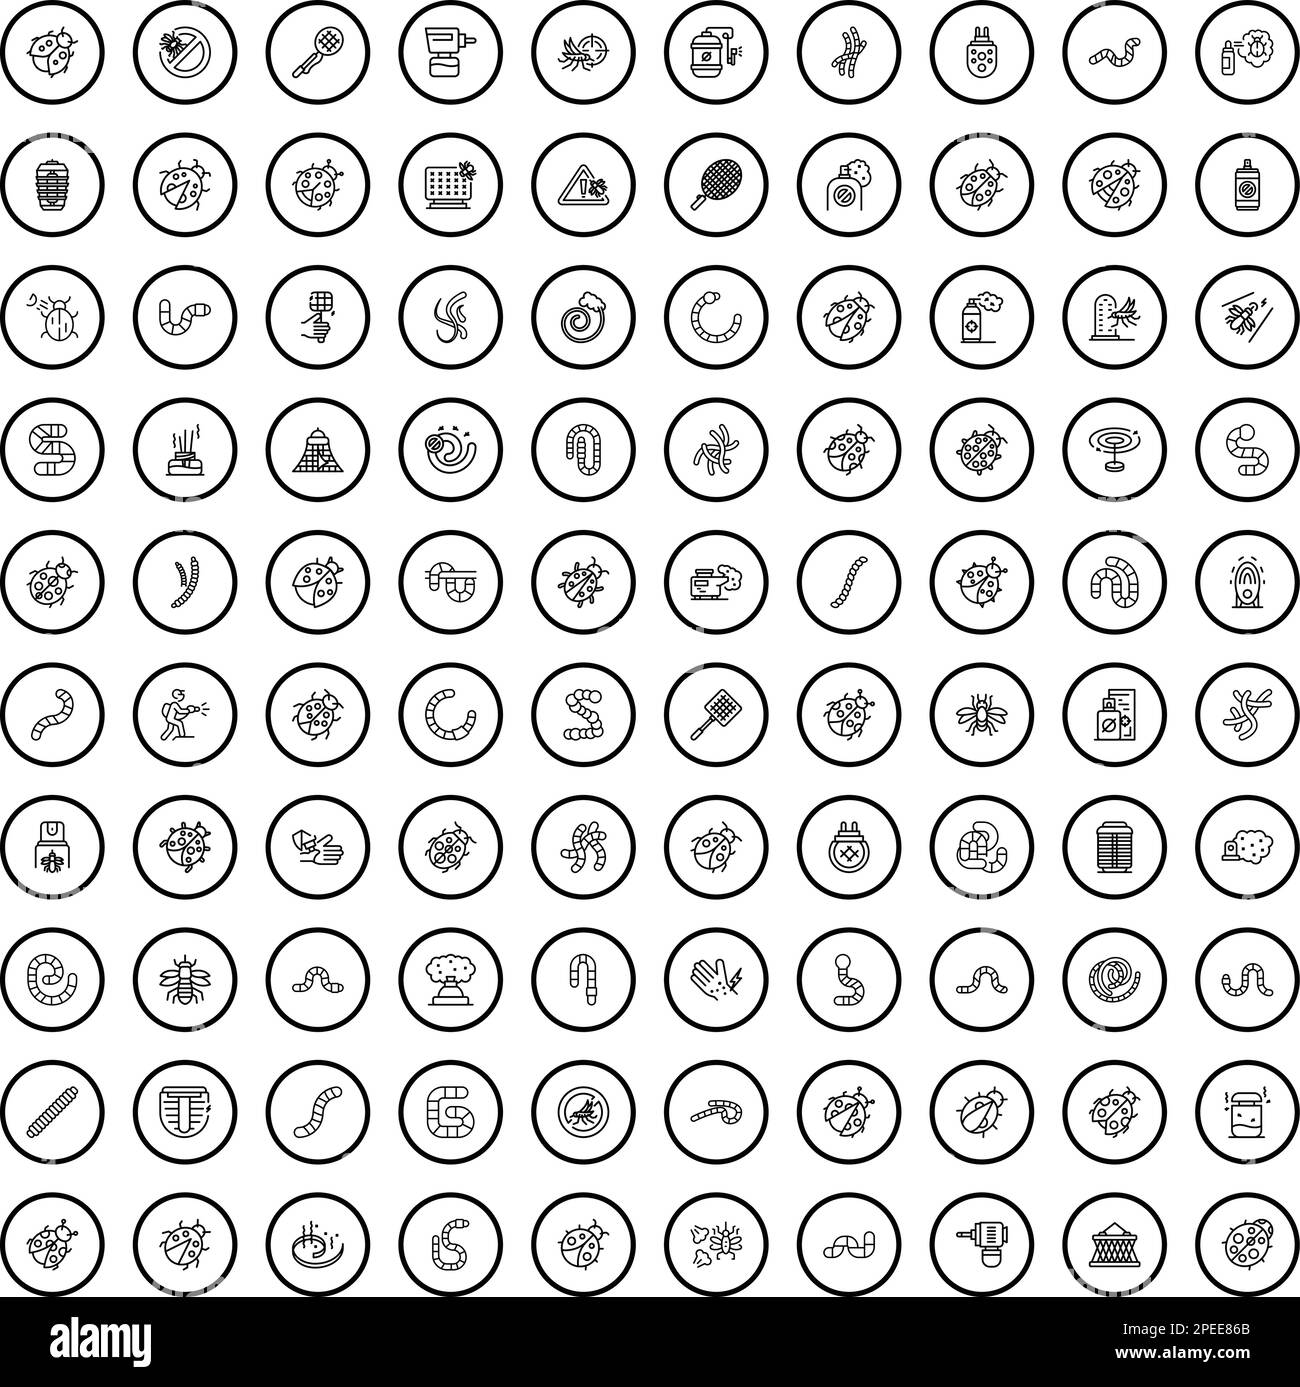 100 icone di insetto set. Illustrazione di contorno di 100 icone di insetto insieme vettore isolato su sfondo bianco Illustrazione Vettoriale